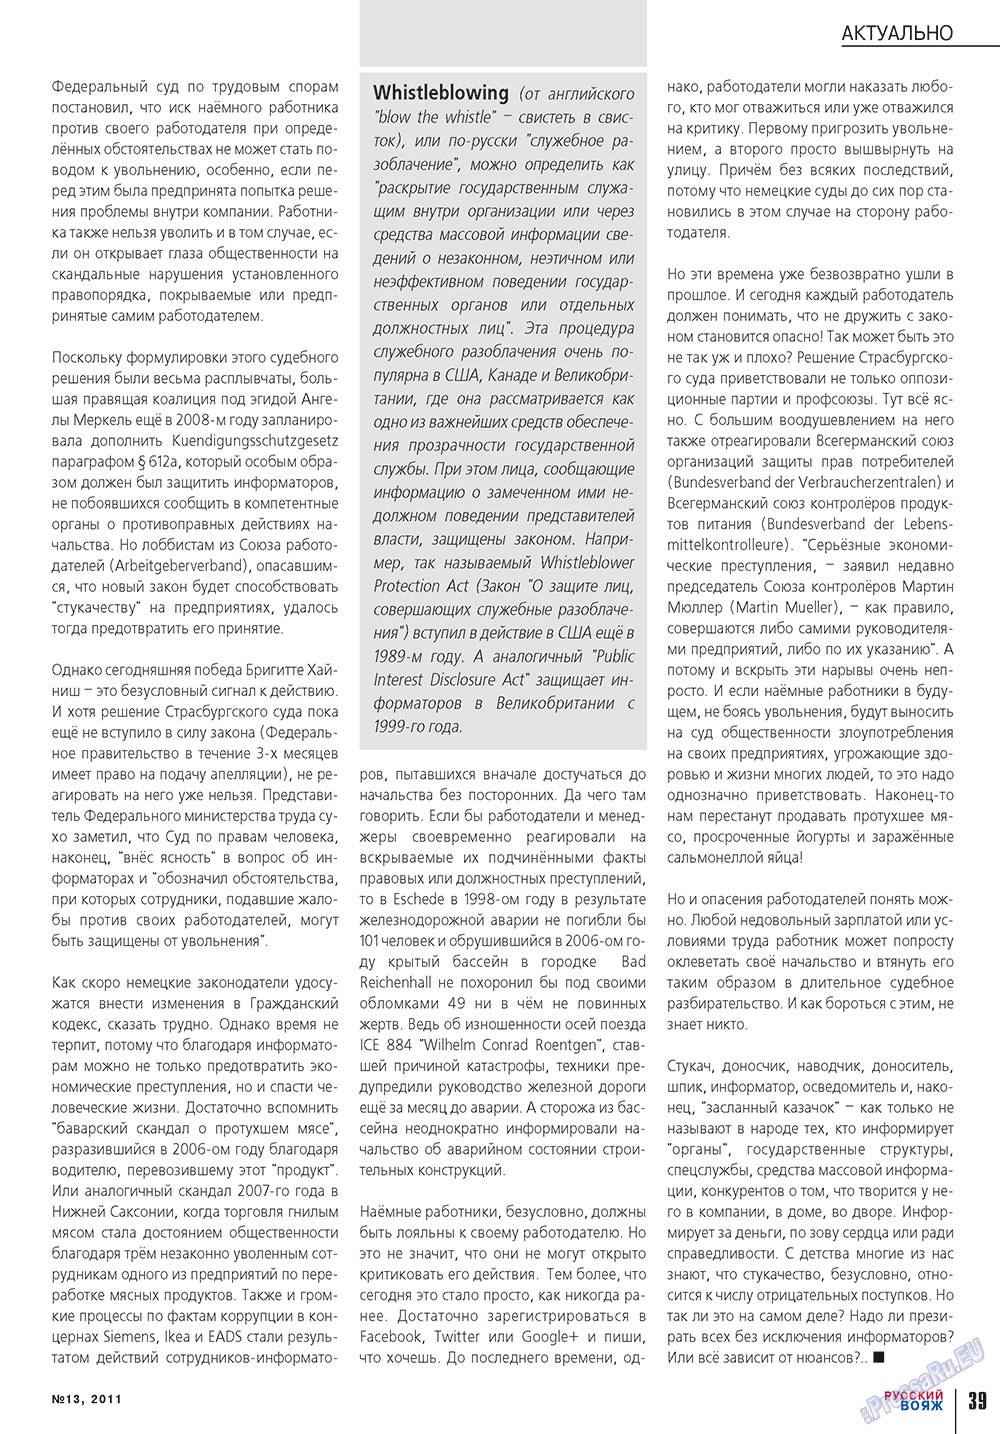 Русский вояж (журнал). 2011 год, номер 13, стр. 39